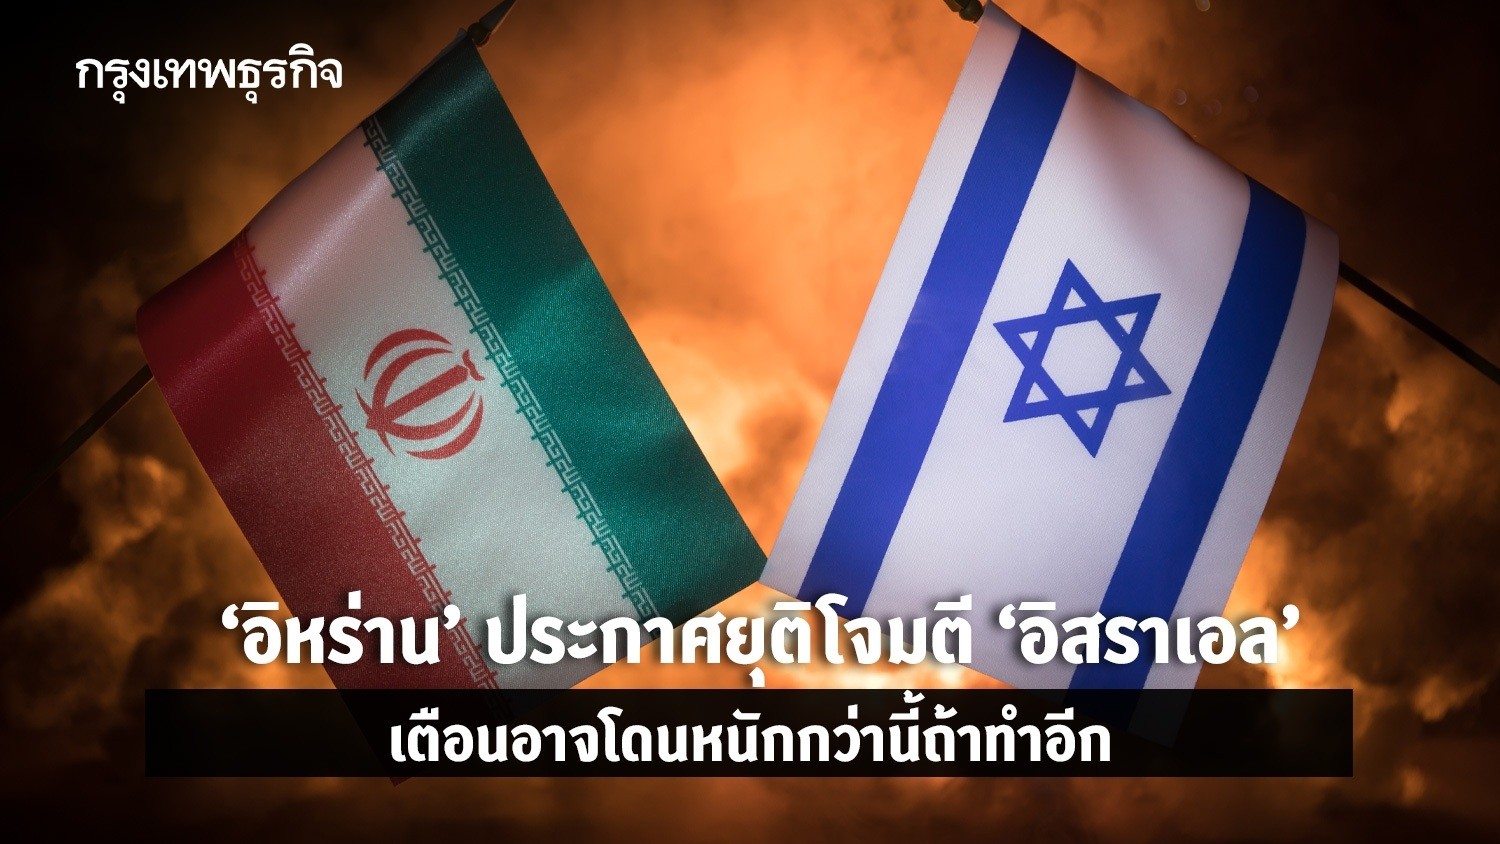 ‘อิหร่าน’ ประกาศยุติโจมตี ‘อิสราเอล’ เตือน อาจโดนหนักกว่านี้ถ้าทำอีก